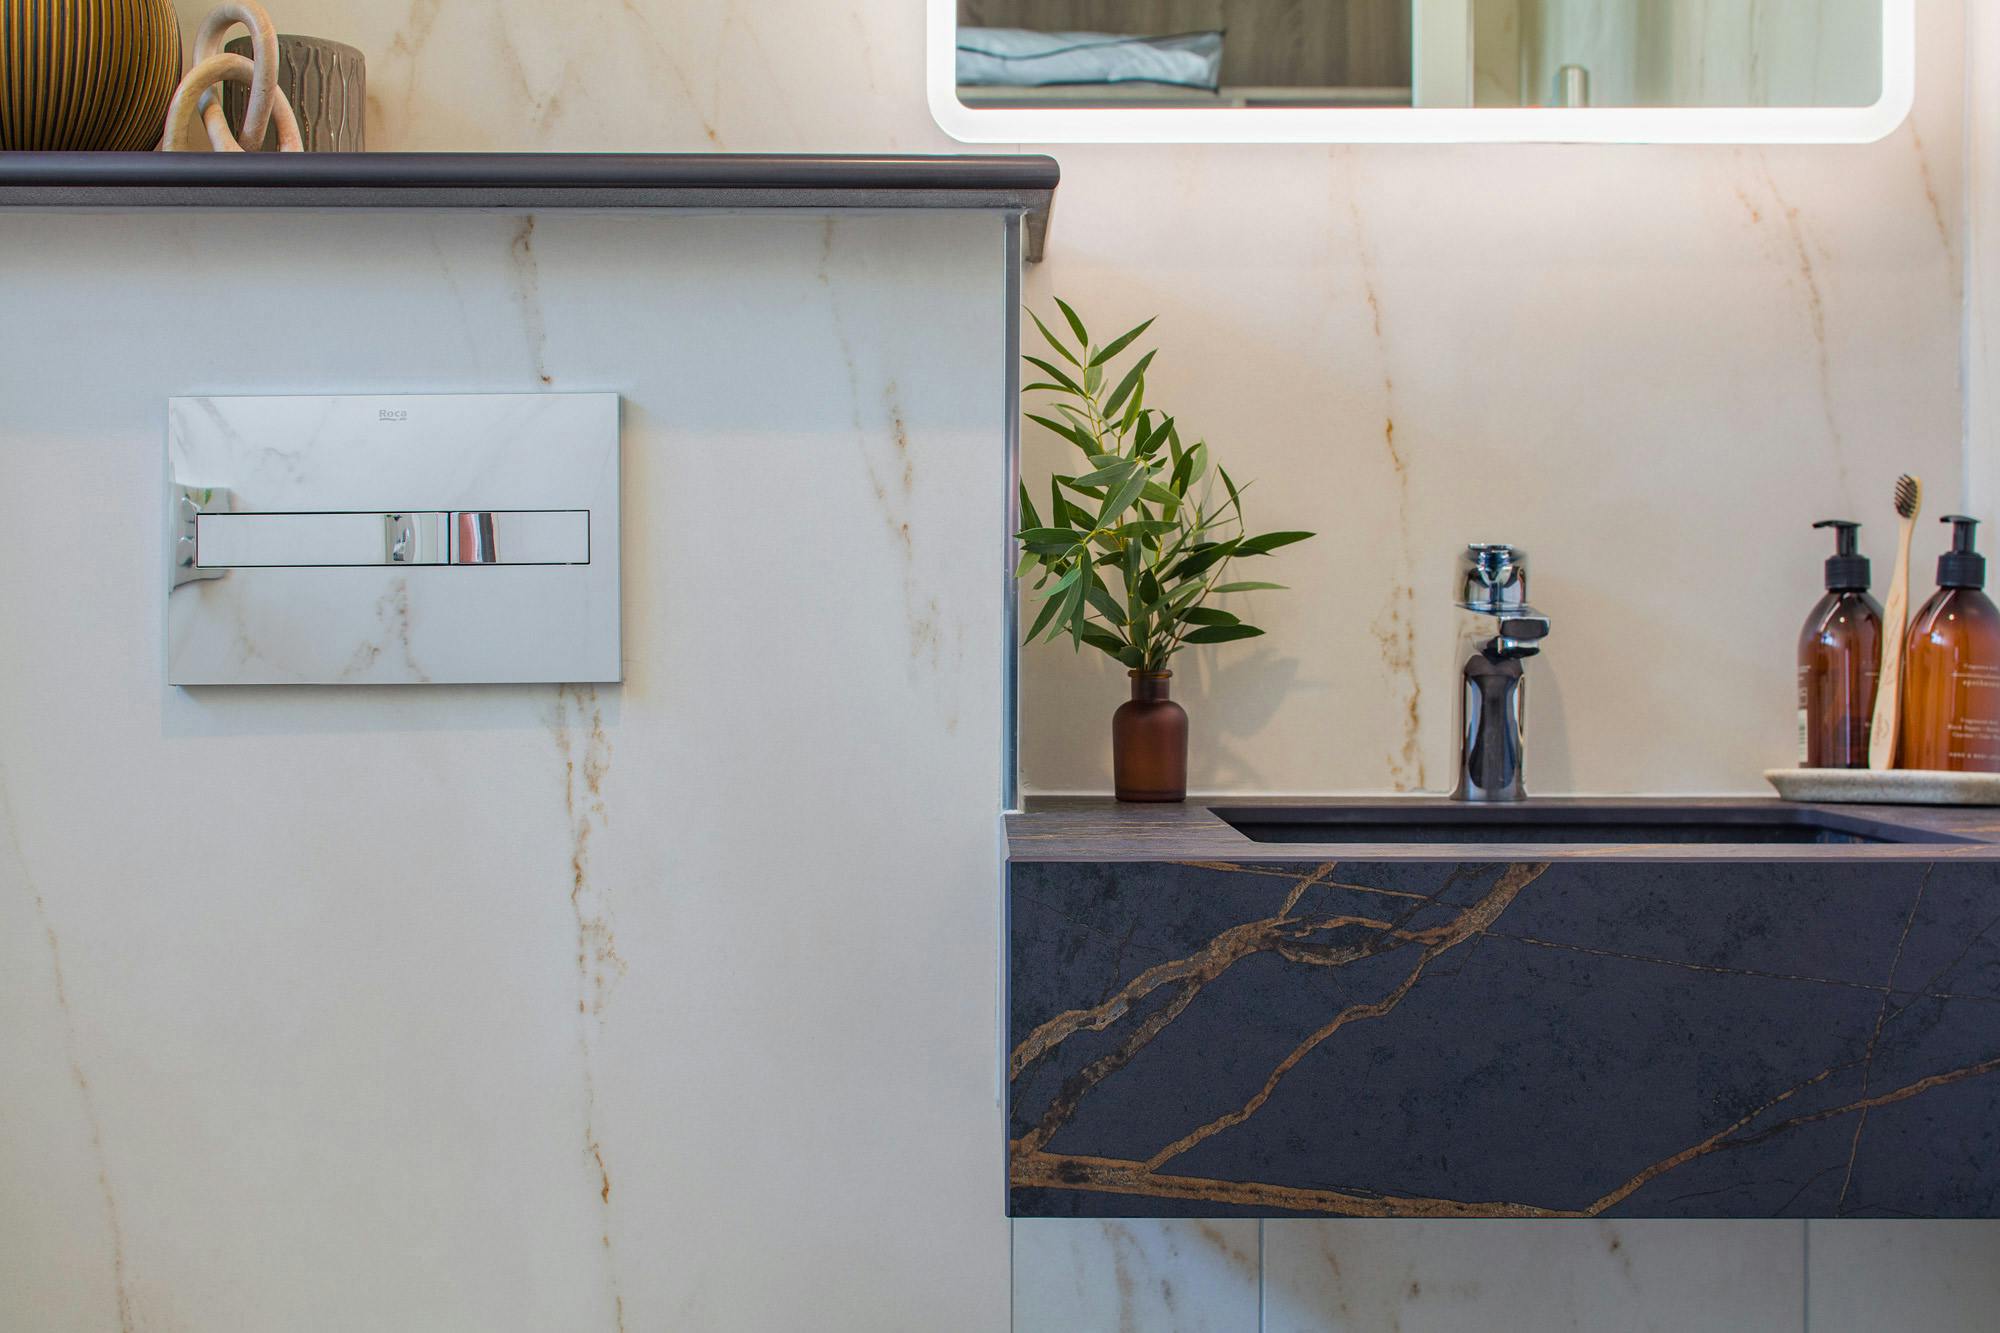 Numero immagine 35 della sezione corrente di Natural light partners with Dekton Marmorio to create an enveloping, sophisticated bathroom di Cosentino Italia